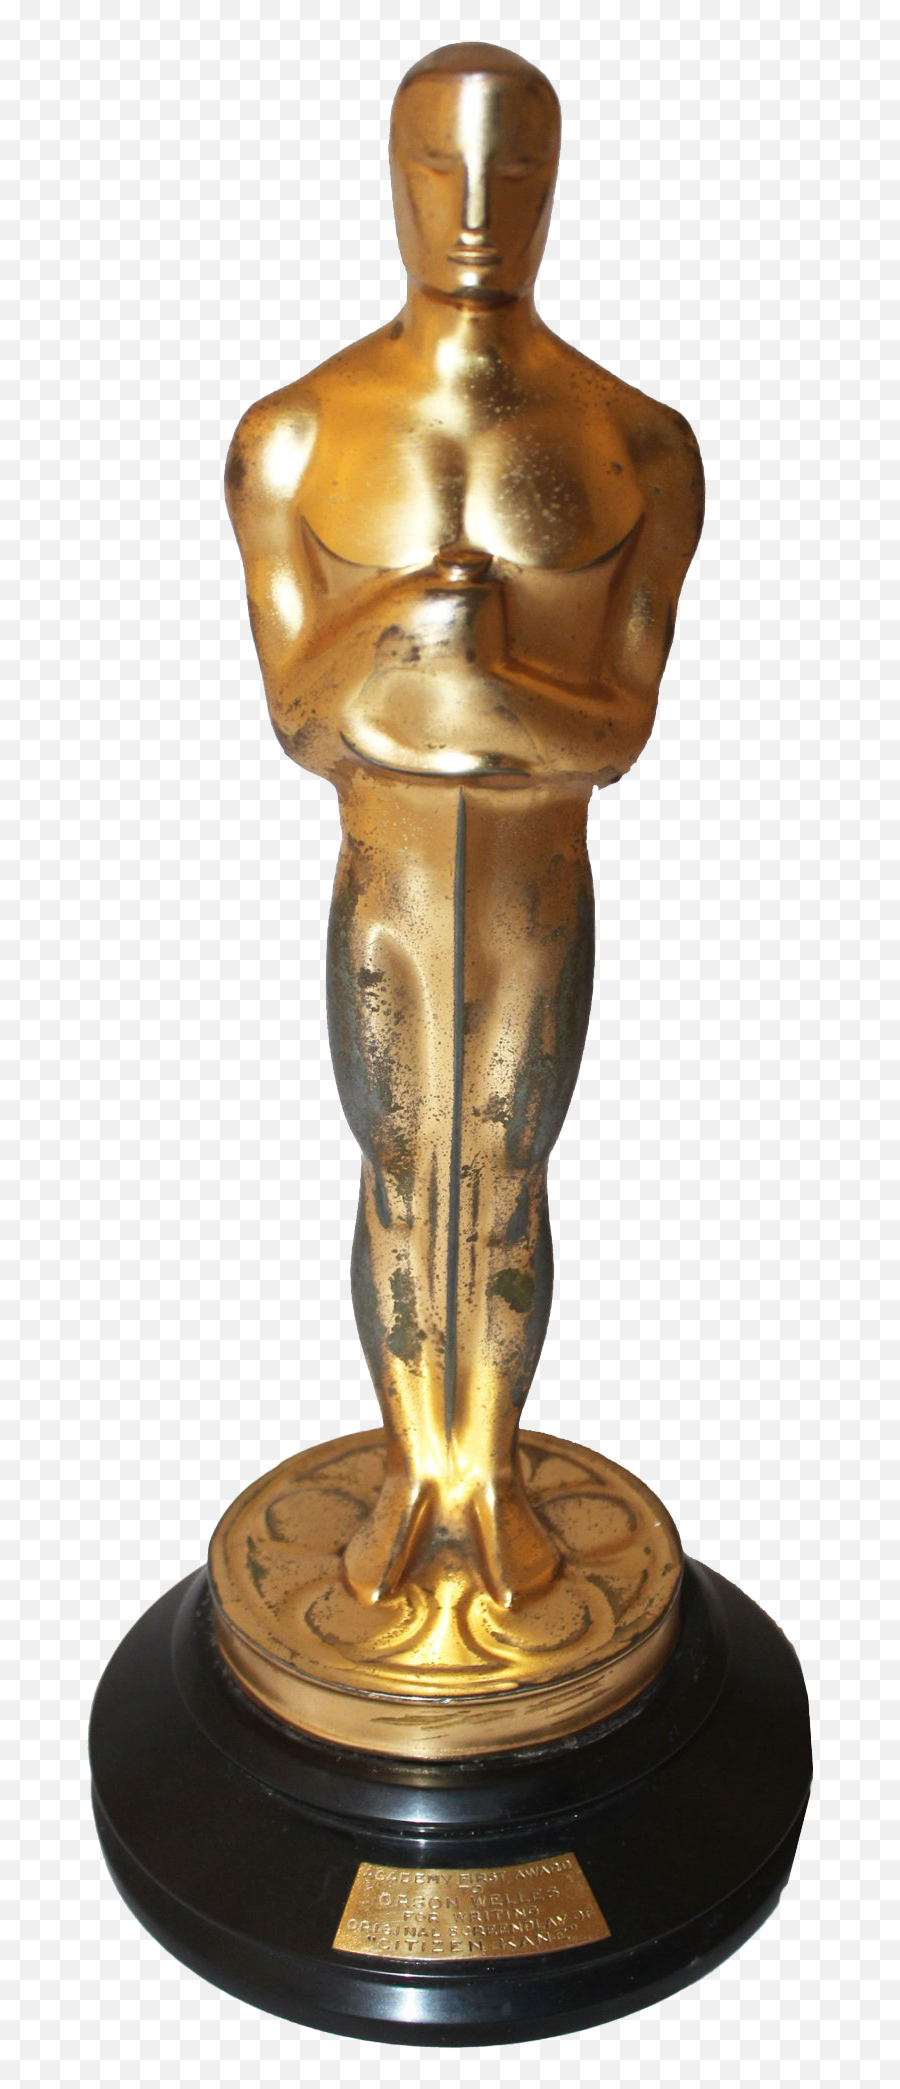 Academy Awards Trophy Png Transparent Image Png Arts - Oscar Statue Five Spokes Emoji,Trophy Png